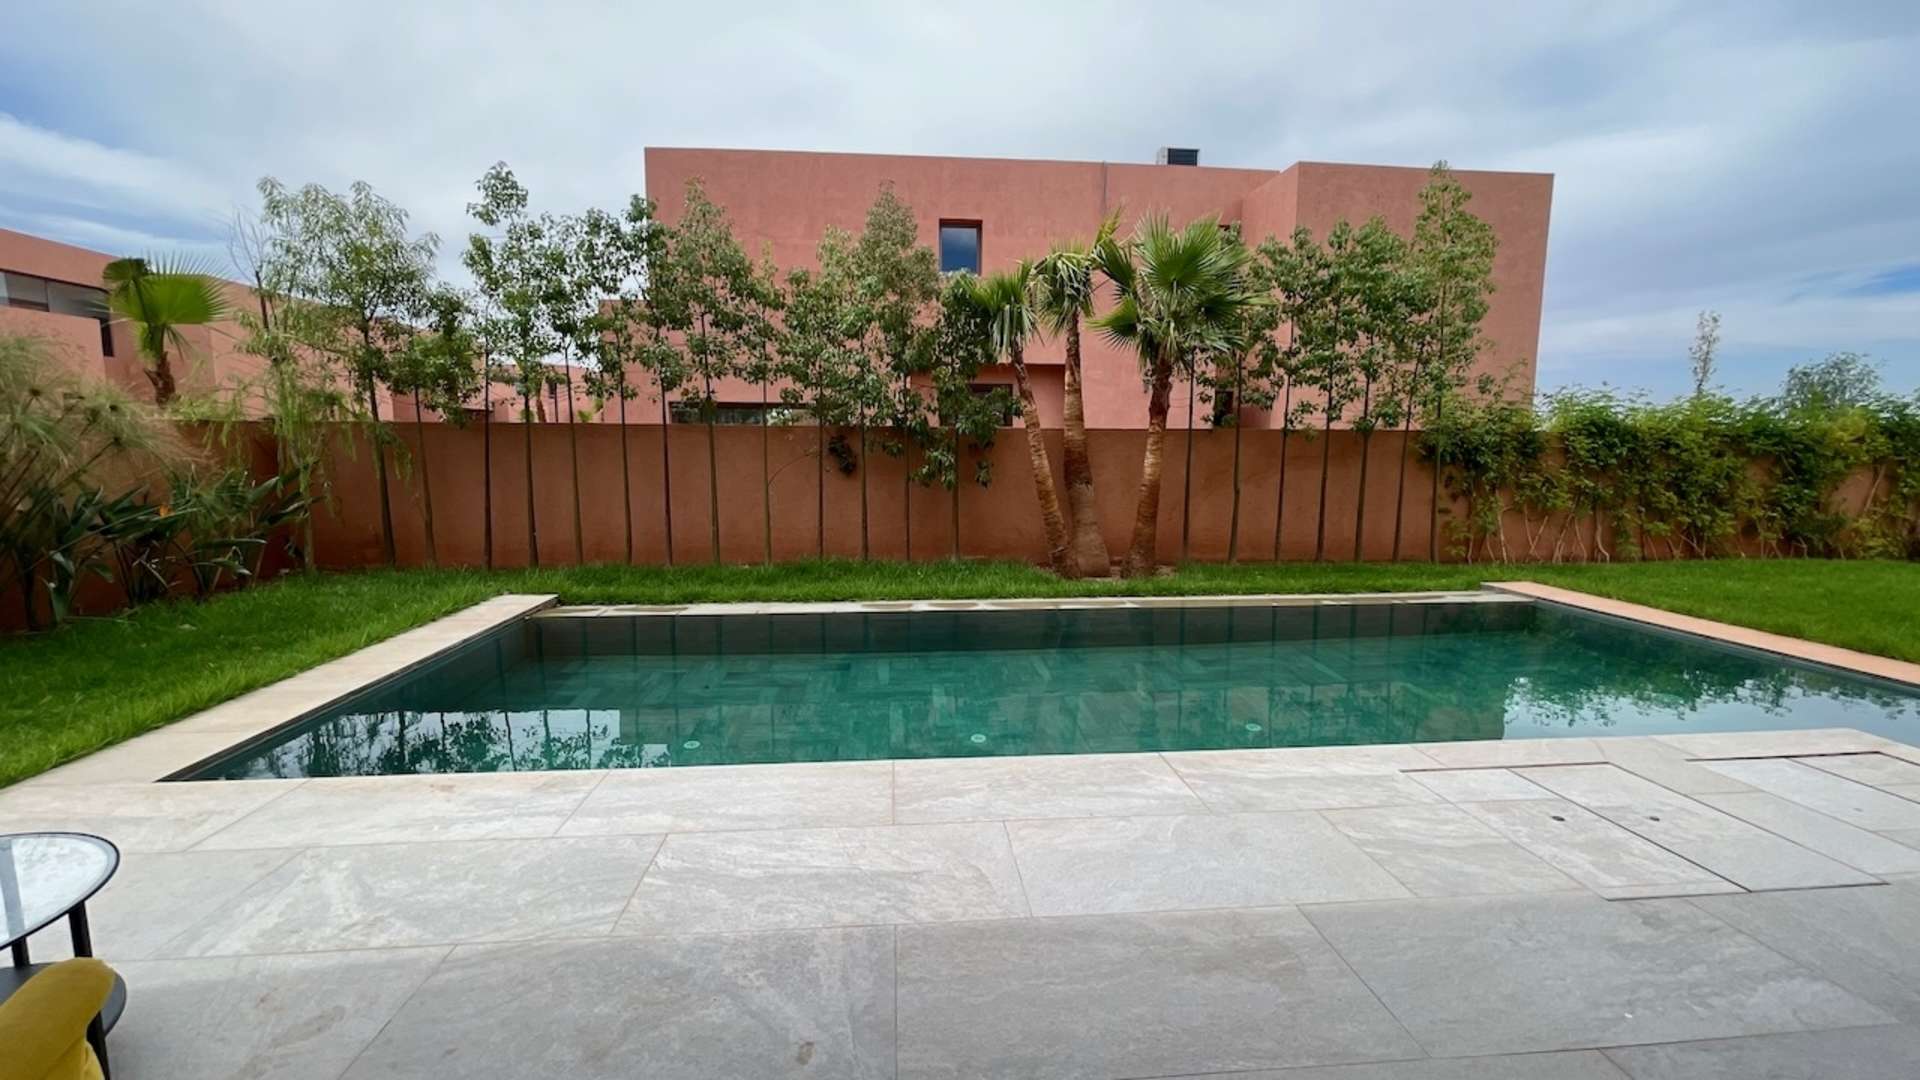 Vente,Villa,Villas Neuves situées dans une résidence sécurisée sur la route de l'Ourika à Marrakech,Marrakech,Route de l'Ourika